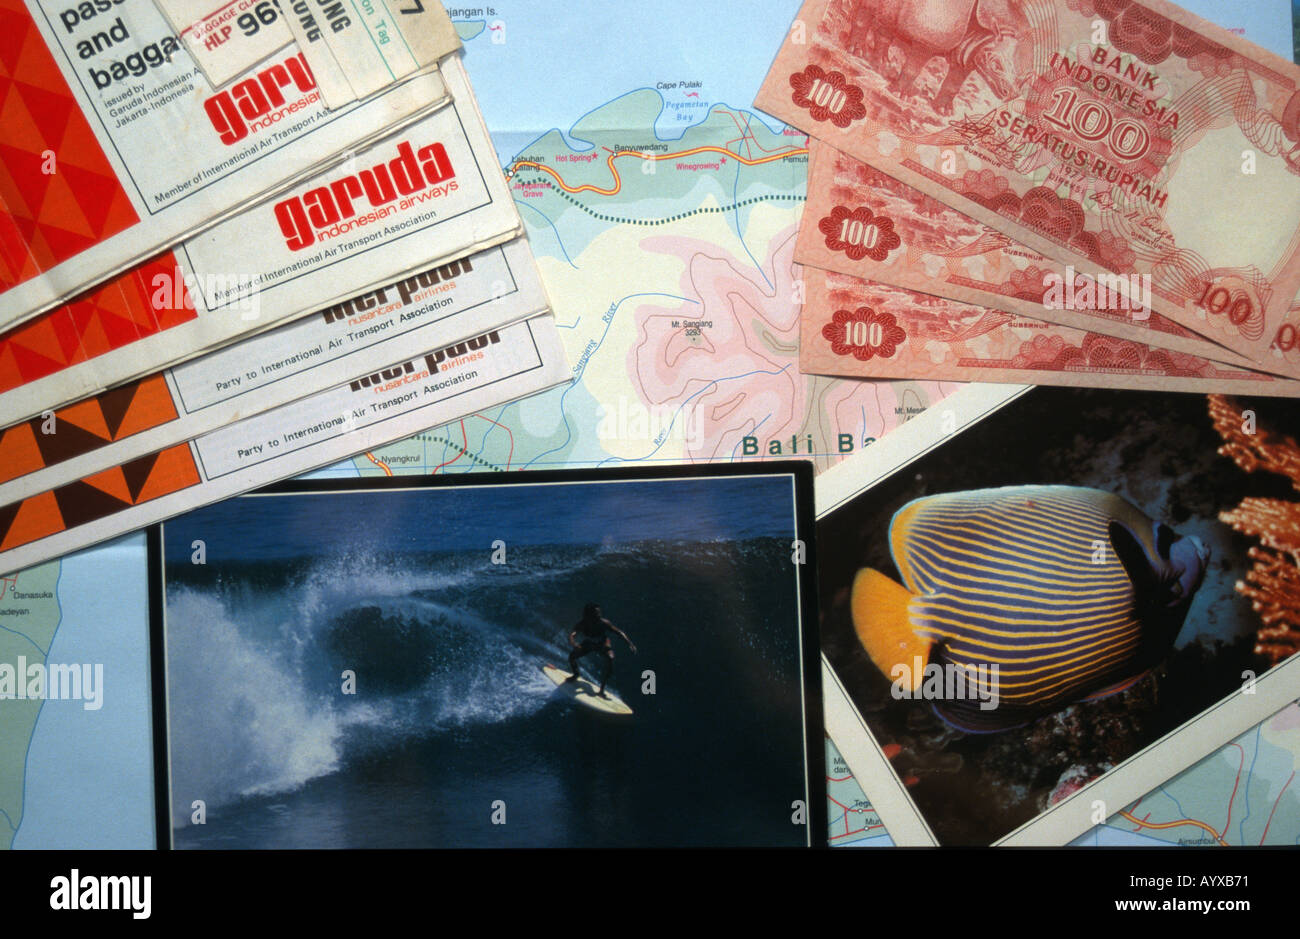 Karte von Bali mit Postkarten Garuda Airlines Flugtickets indonesische Währung Rupiah ruht auf Karte Stockfoto